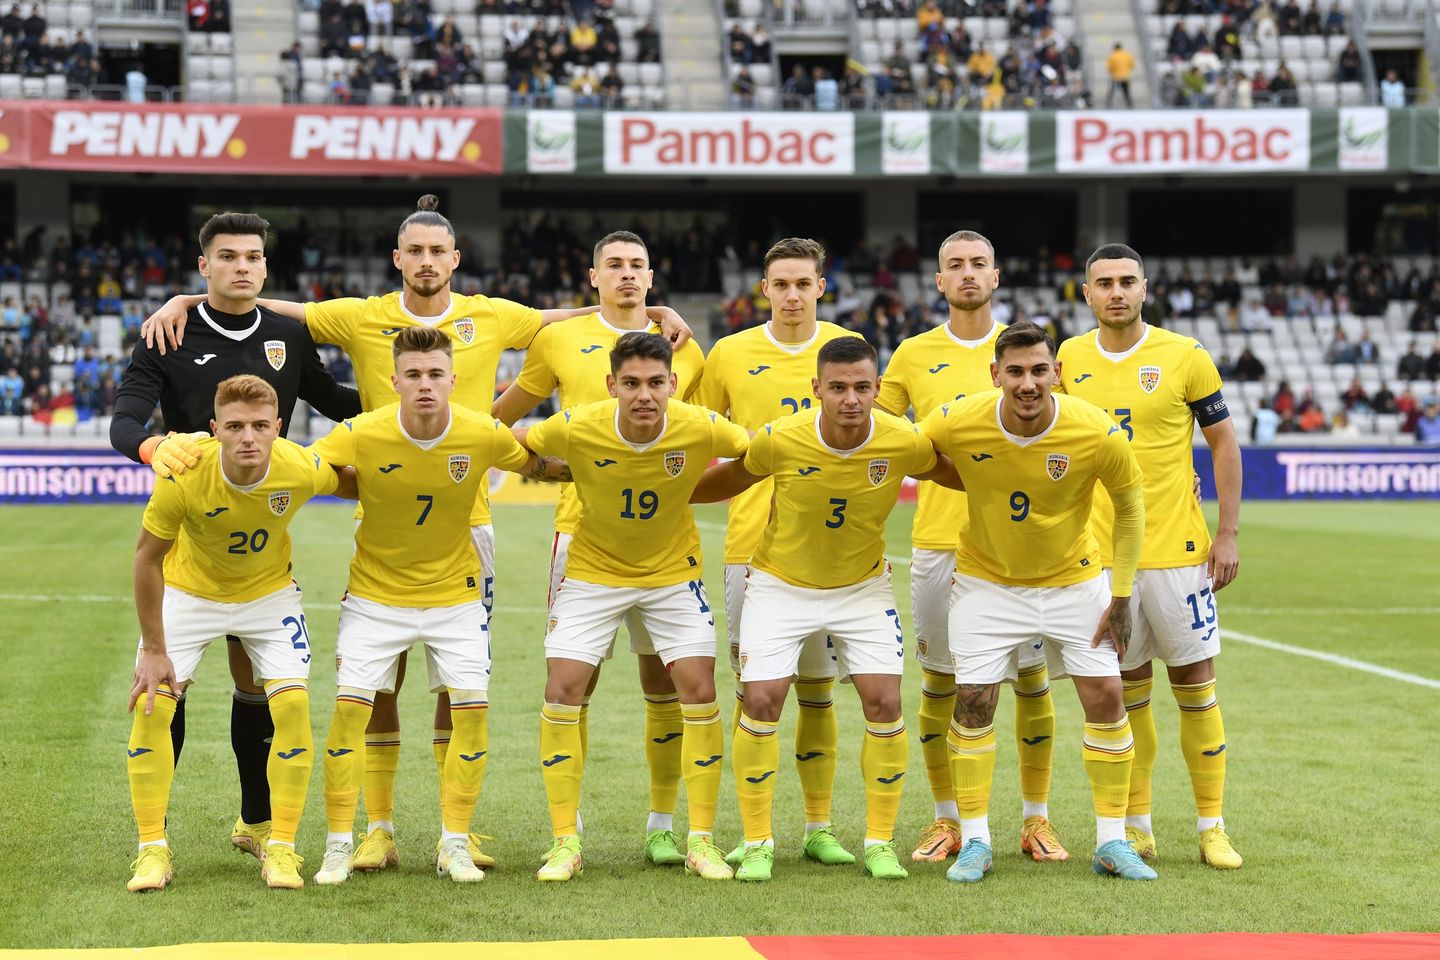 Tricolorii, la primul meci cu Emil Săndoi selecţioner, au pierdut fără drept de apel/ FOTO: Echipa națională de fotbal a României - Facebook